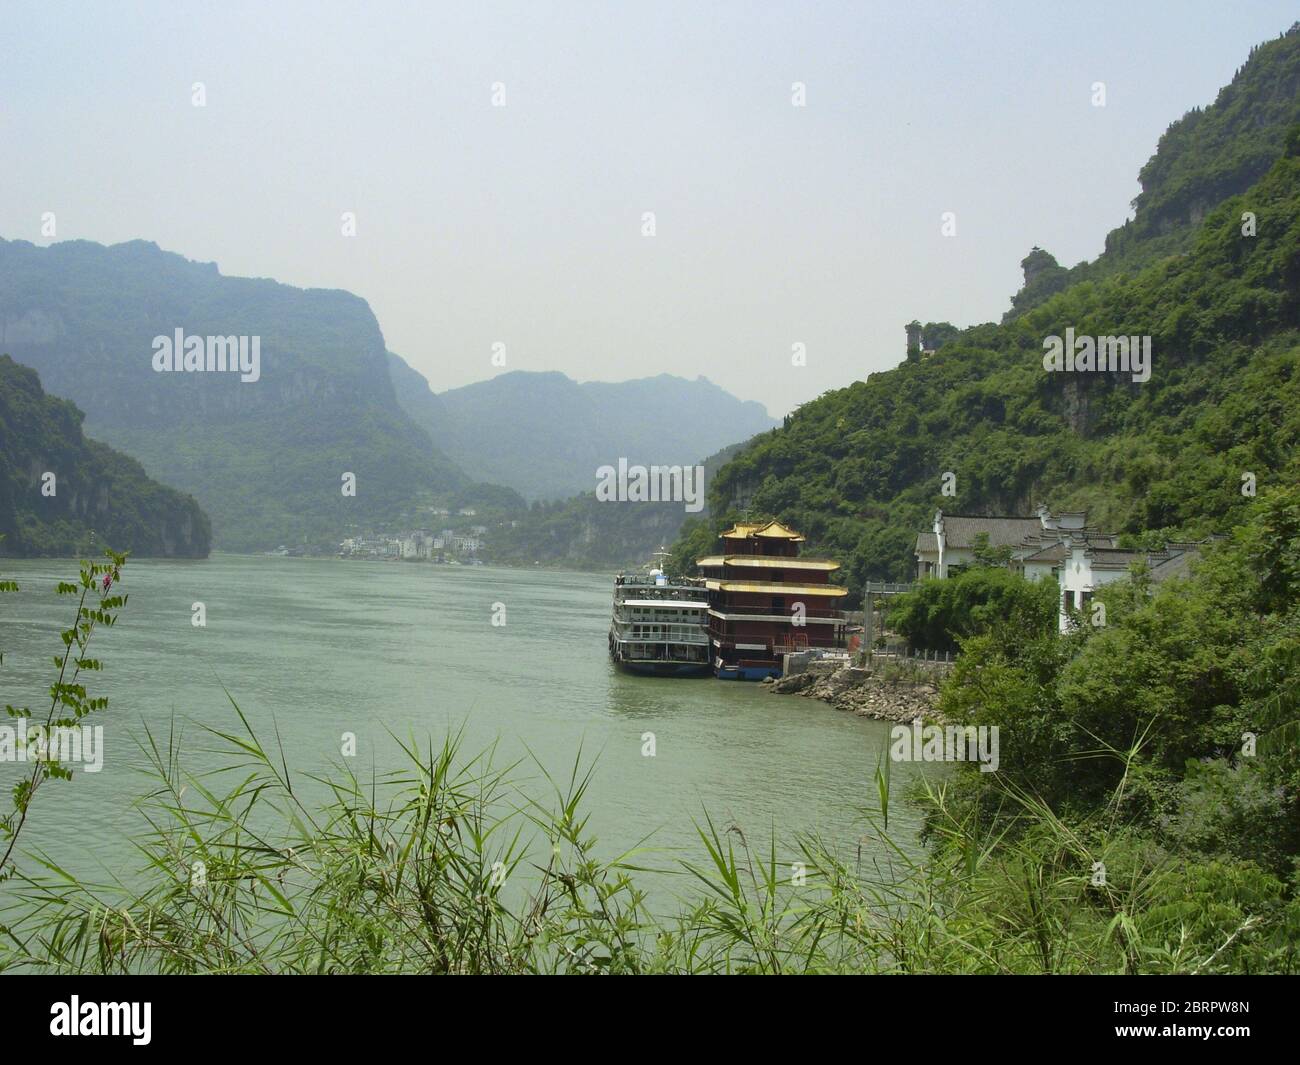 22 maggio 2020, Shanxia, Shanxia, Cina: ChongqingÃ¯Â¼Å'CHINA-le tre gole del fiume Yangtze è famosa per la sua topografia precipitosa, paesaggi pittoreschi, slancio magnifico e numerosi punti panoramici e siti storici. E' un'attrazione turistica famosa in tutto il mondo e un luogo caldo di turismo in Cina. Le tre gole sono il nome generale della gola del qutang, della gola del wuxia e della gola di xiling. Inizia da baidicheng nella contea di Fengjie, città di chongqing ad ovest, e termina a nanjinguan nella città di yichang, provincia di hubei ad est. Si estende su cinque contee e città, tra cui fengjie, wushan, badong, Foto Stock